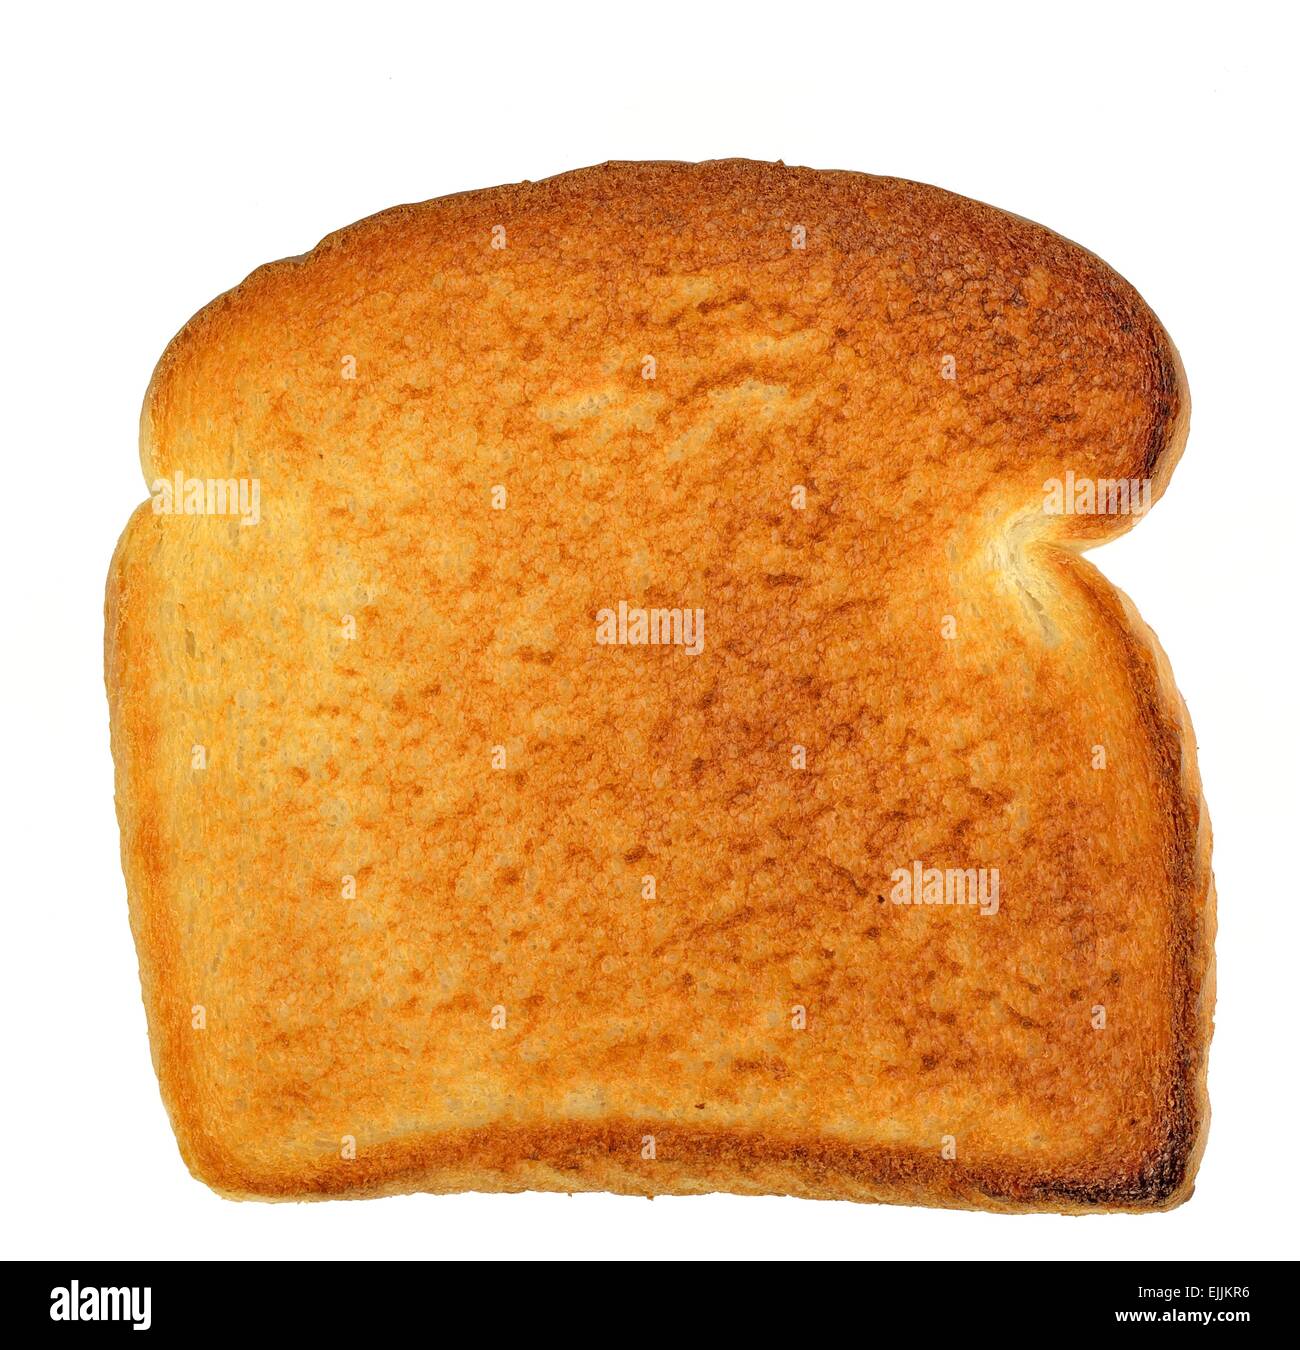 Scheibe weißen Toast auf einem weißen Hintergrund. Stockfoto